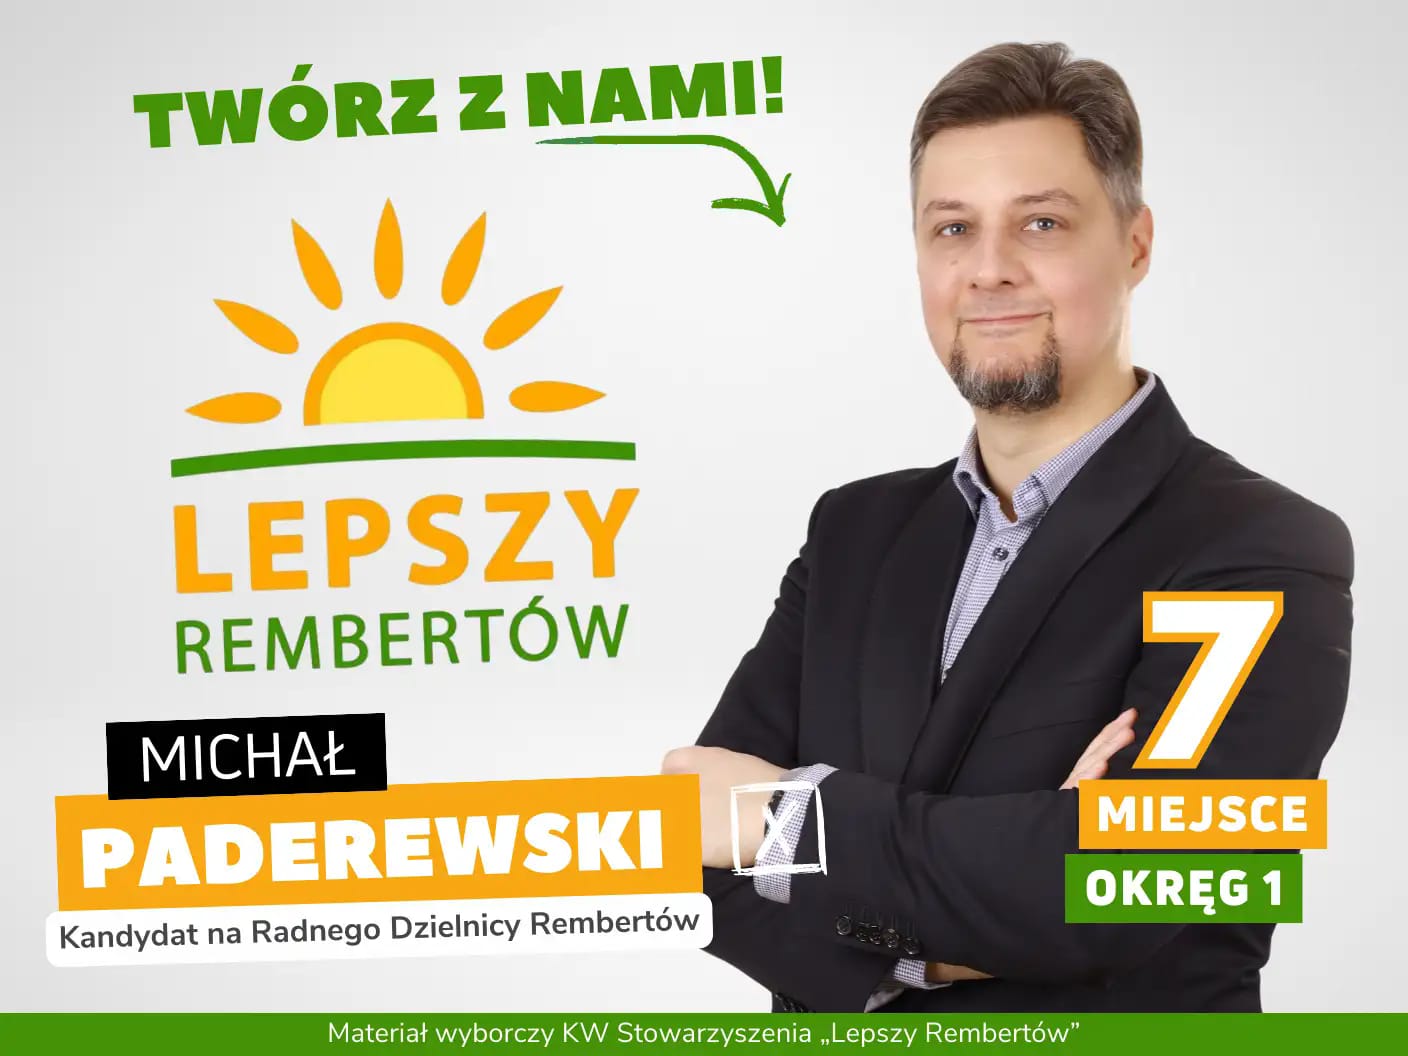 Michał Paderewski Okręg 1 miejsce 4